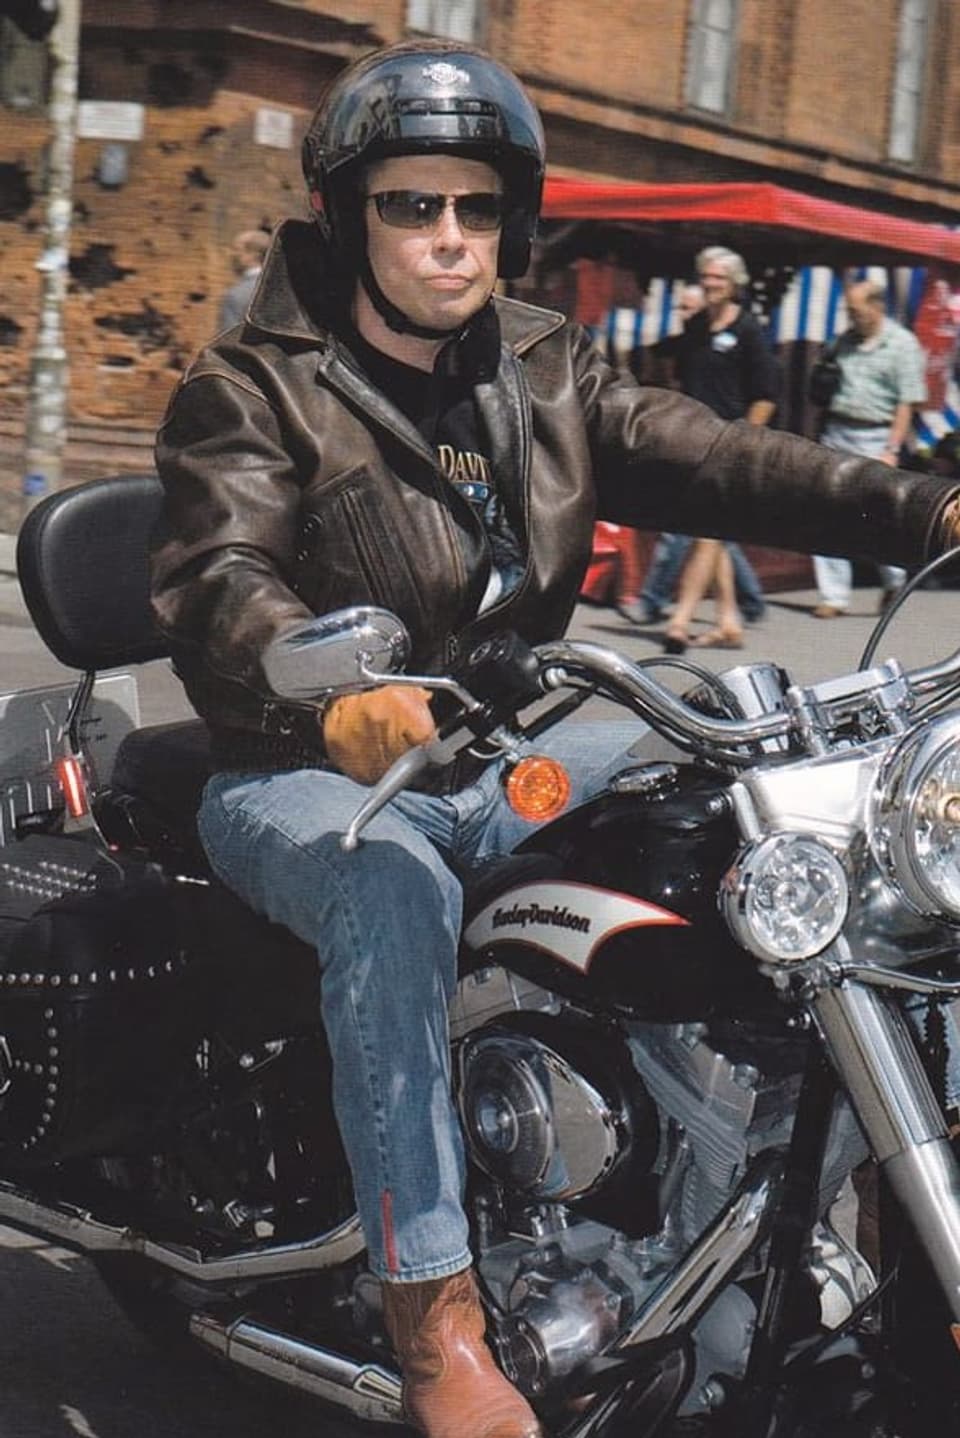 Peter Kraus in Lederkluft und mit Helm auf Harley Davidson.